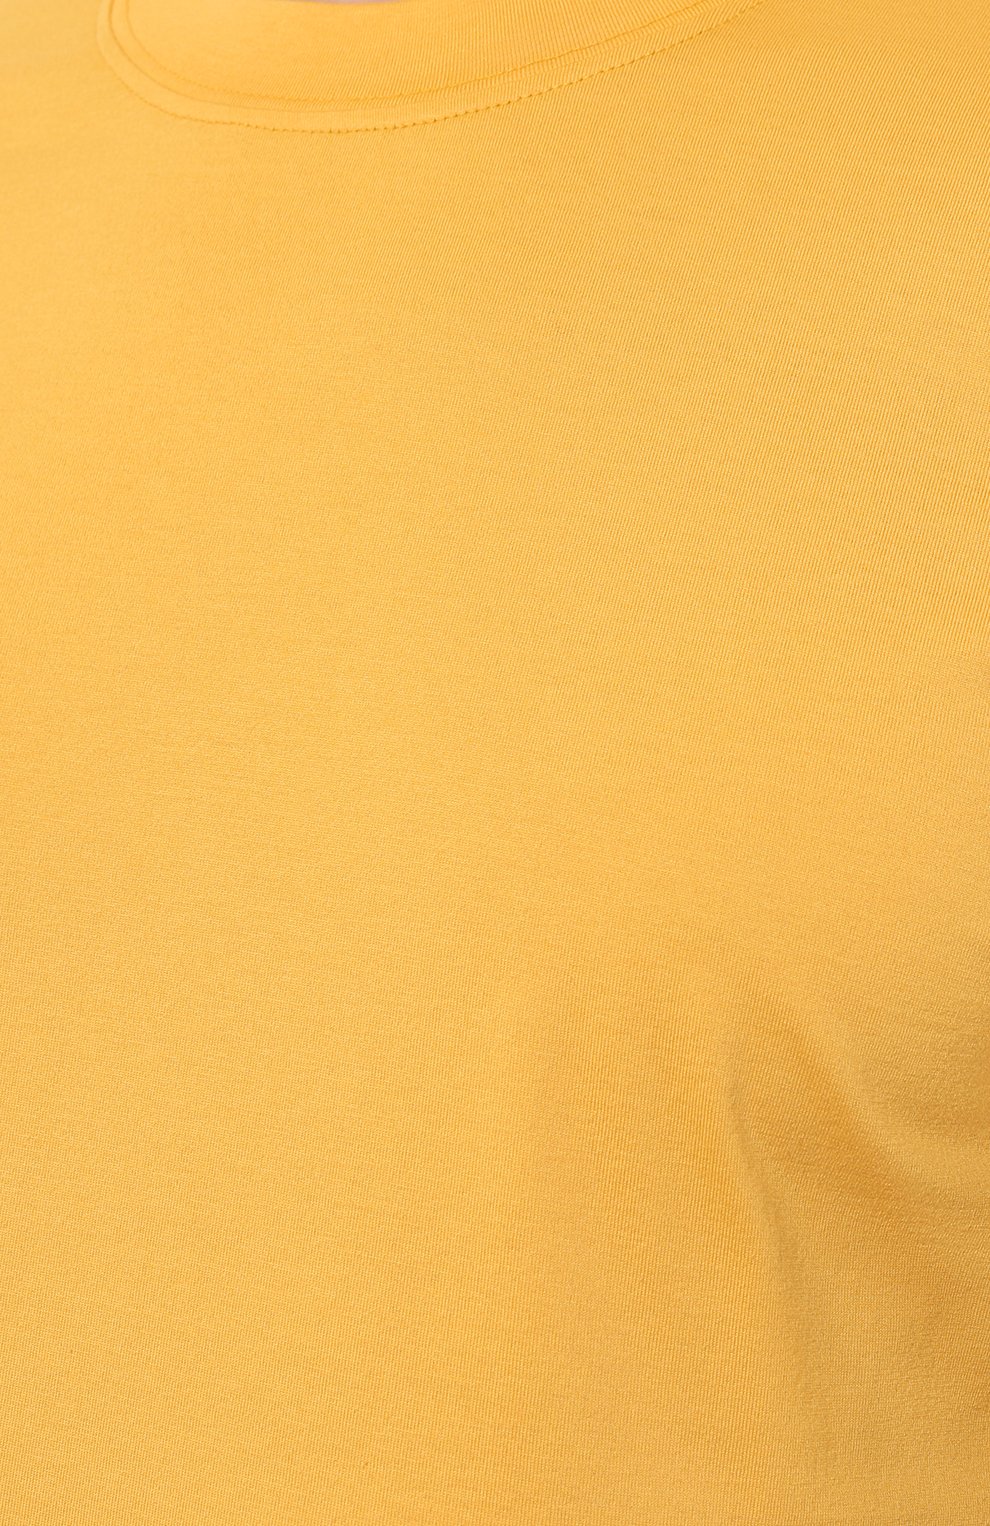 Мужская хлопковая футболка  BRUNELLO CUCINELLI желтого цвета, арт. M0T611308 | Фото 5 (Принт: Без принта; Рукава: Короткие; Длина (для топов): Стандартные; Материал внешний: Хлопок; Размерность: Маломерит; Стили: Кэжуэл)